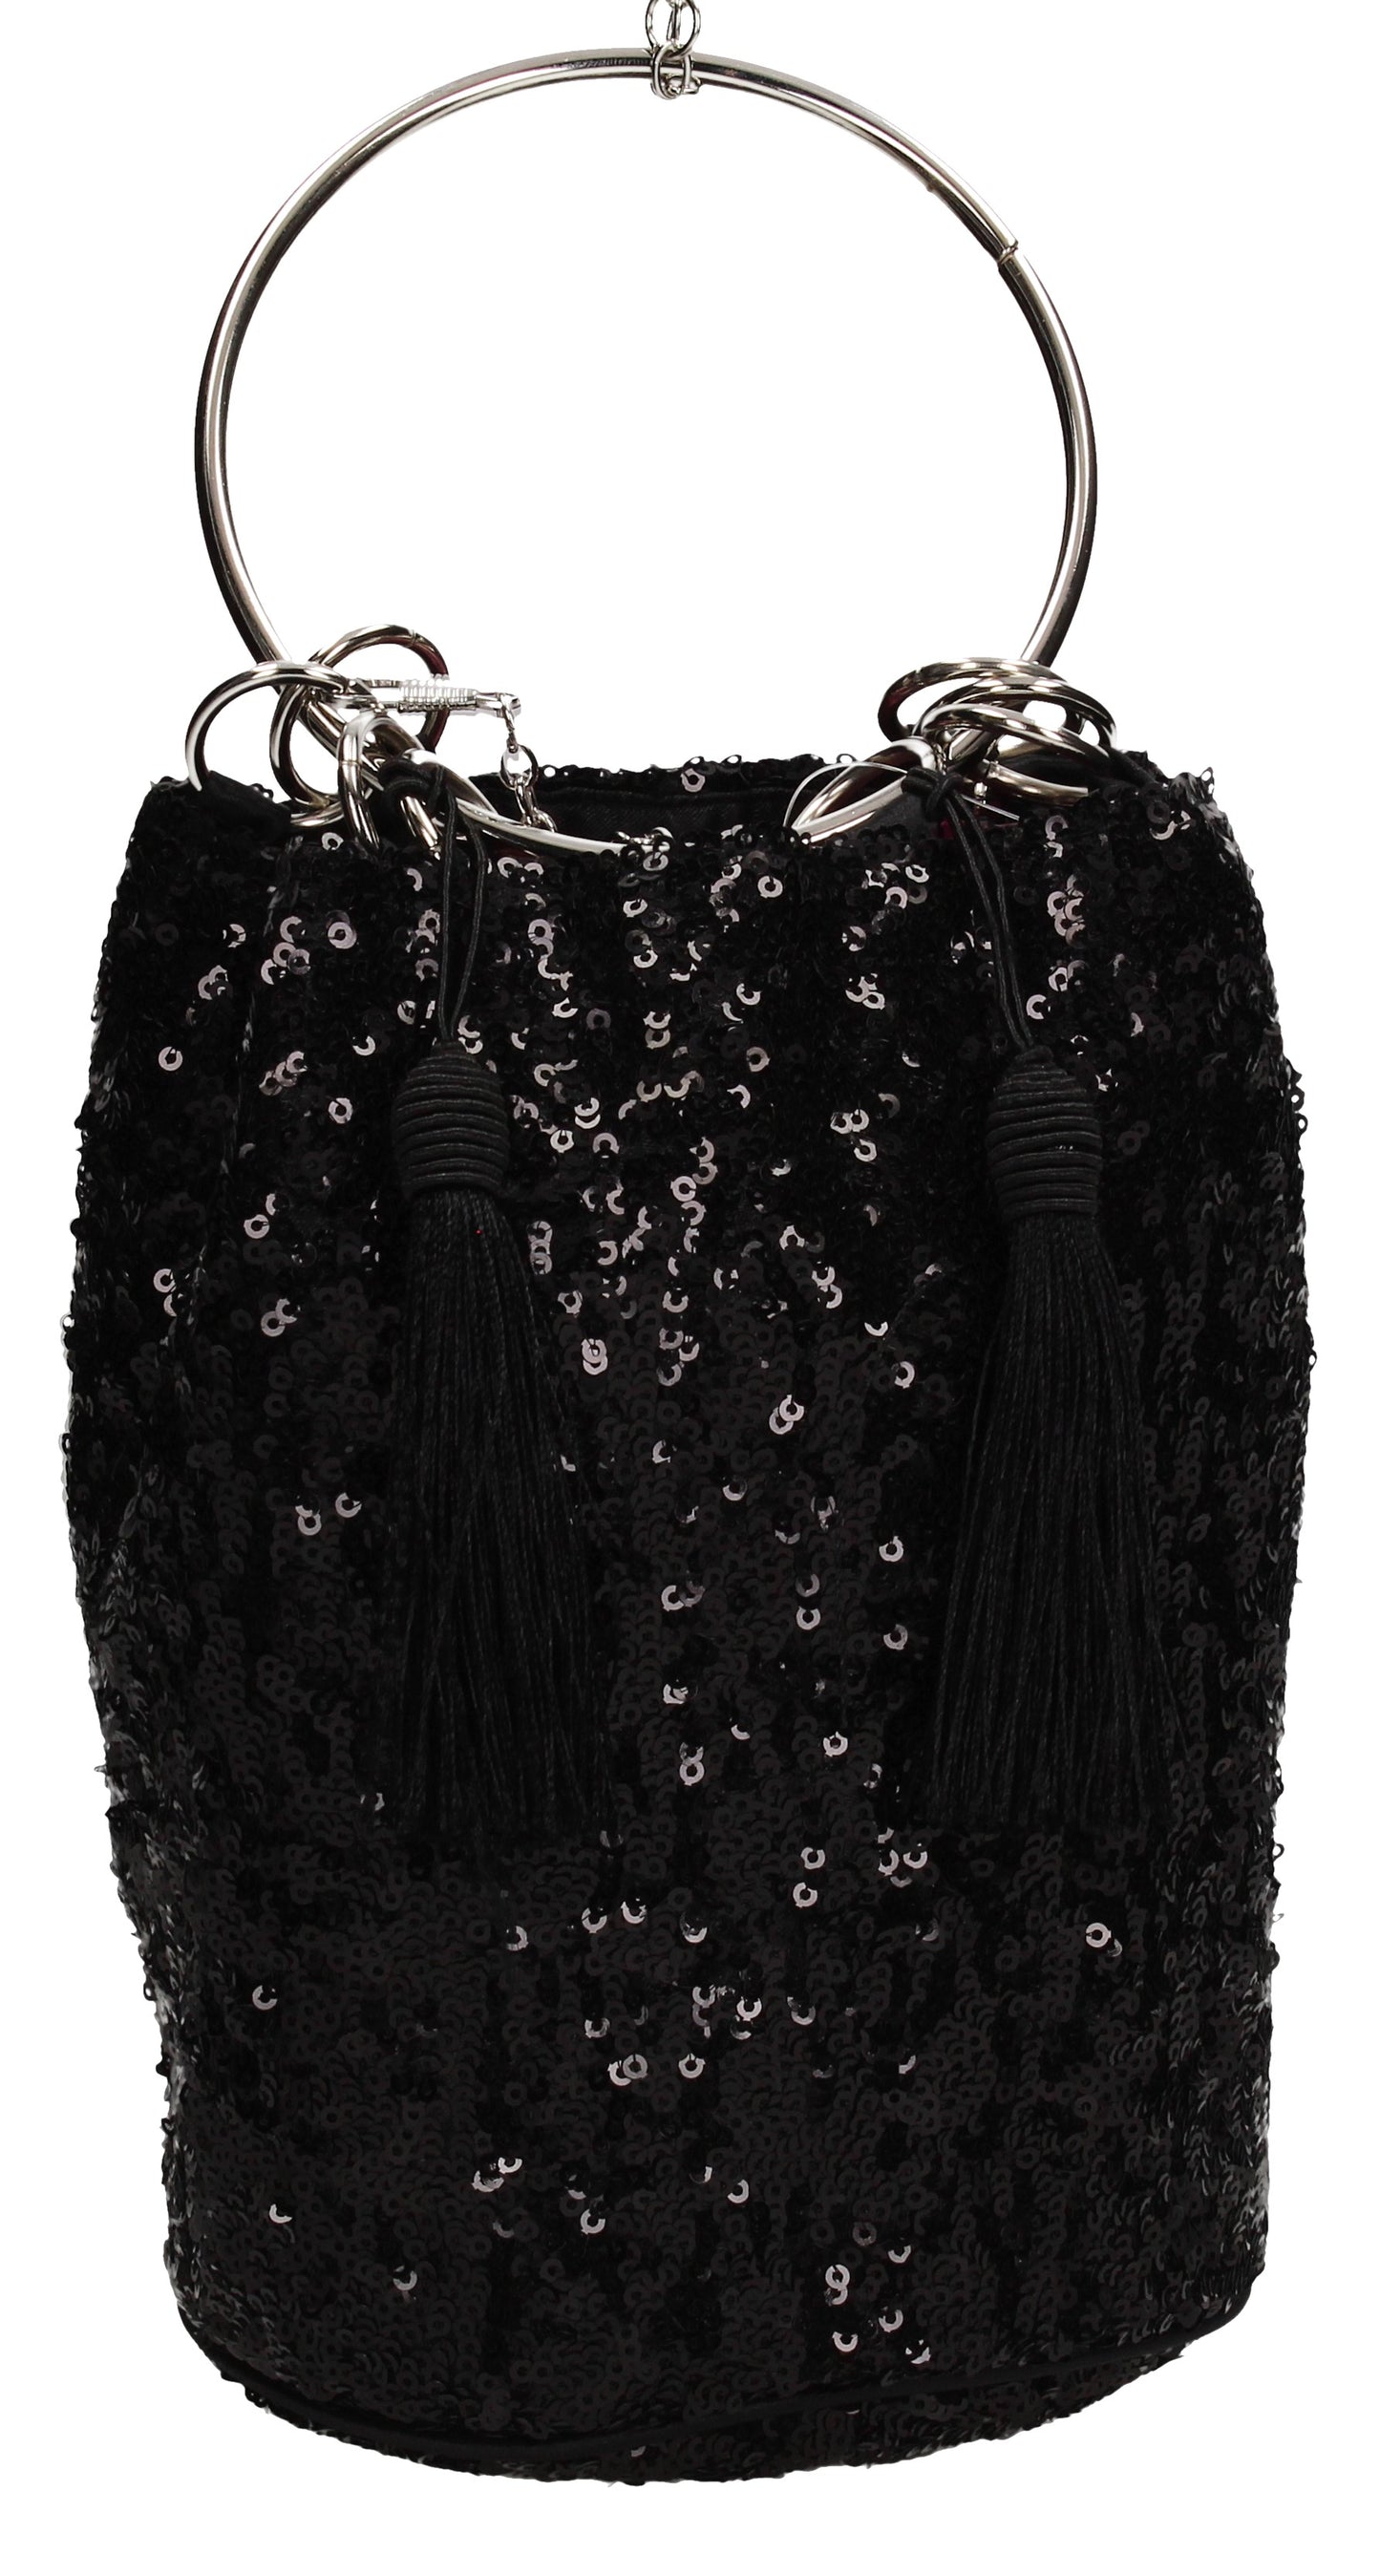 Denise Sequin & Ring Clutch Bag Black